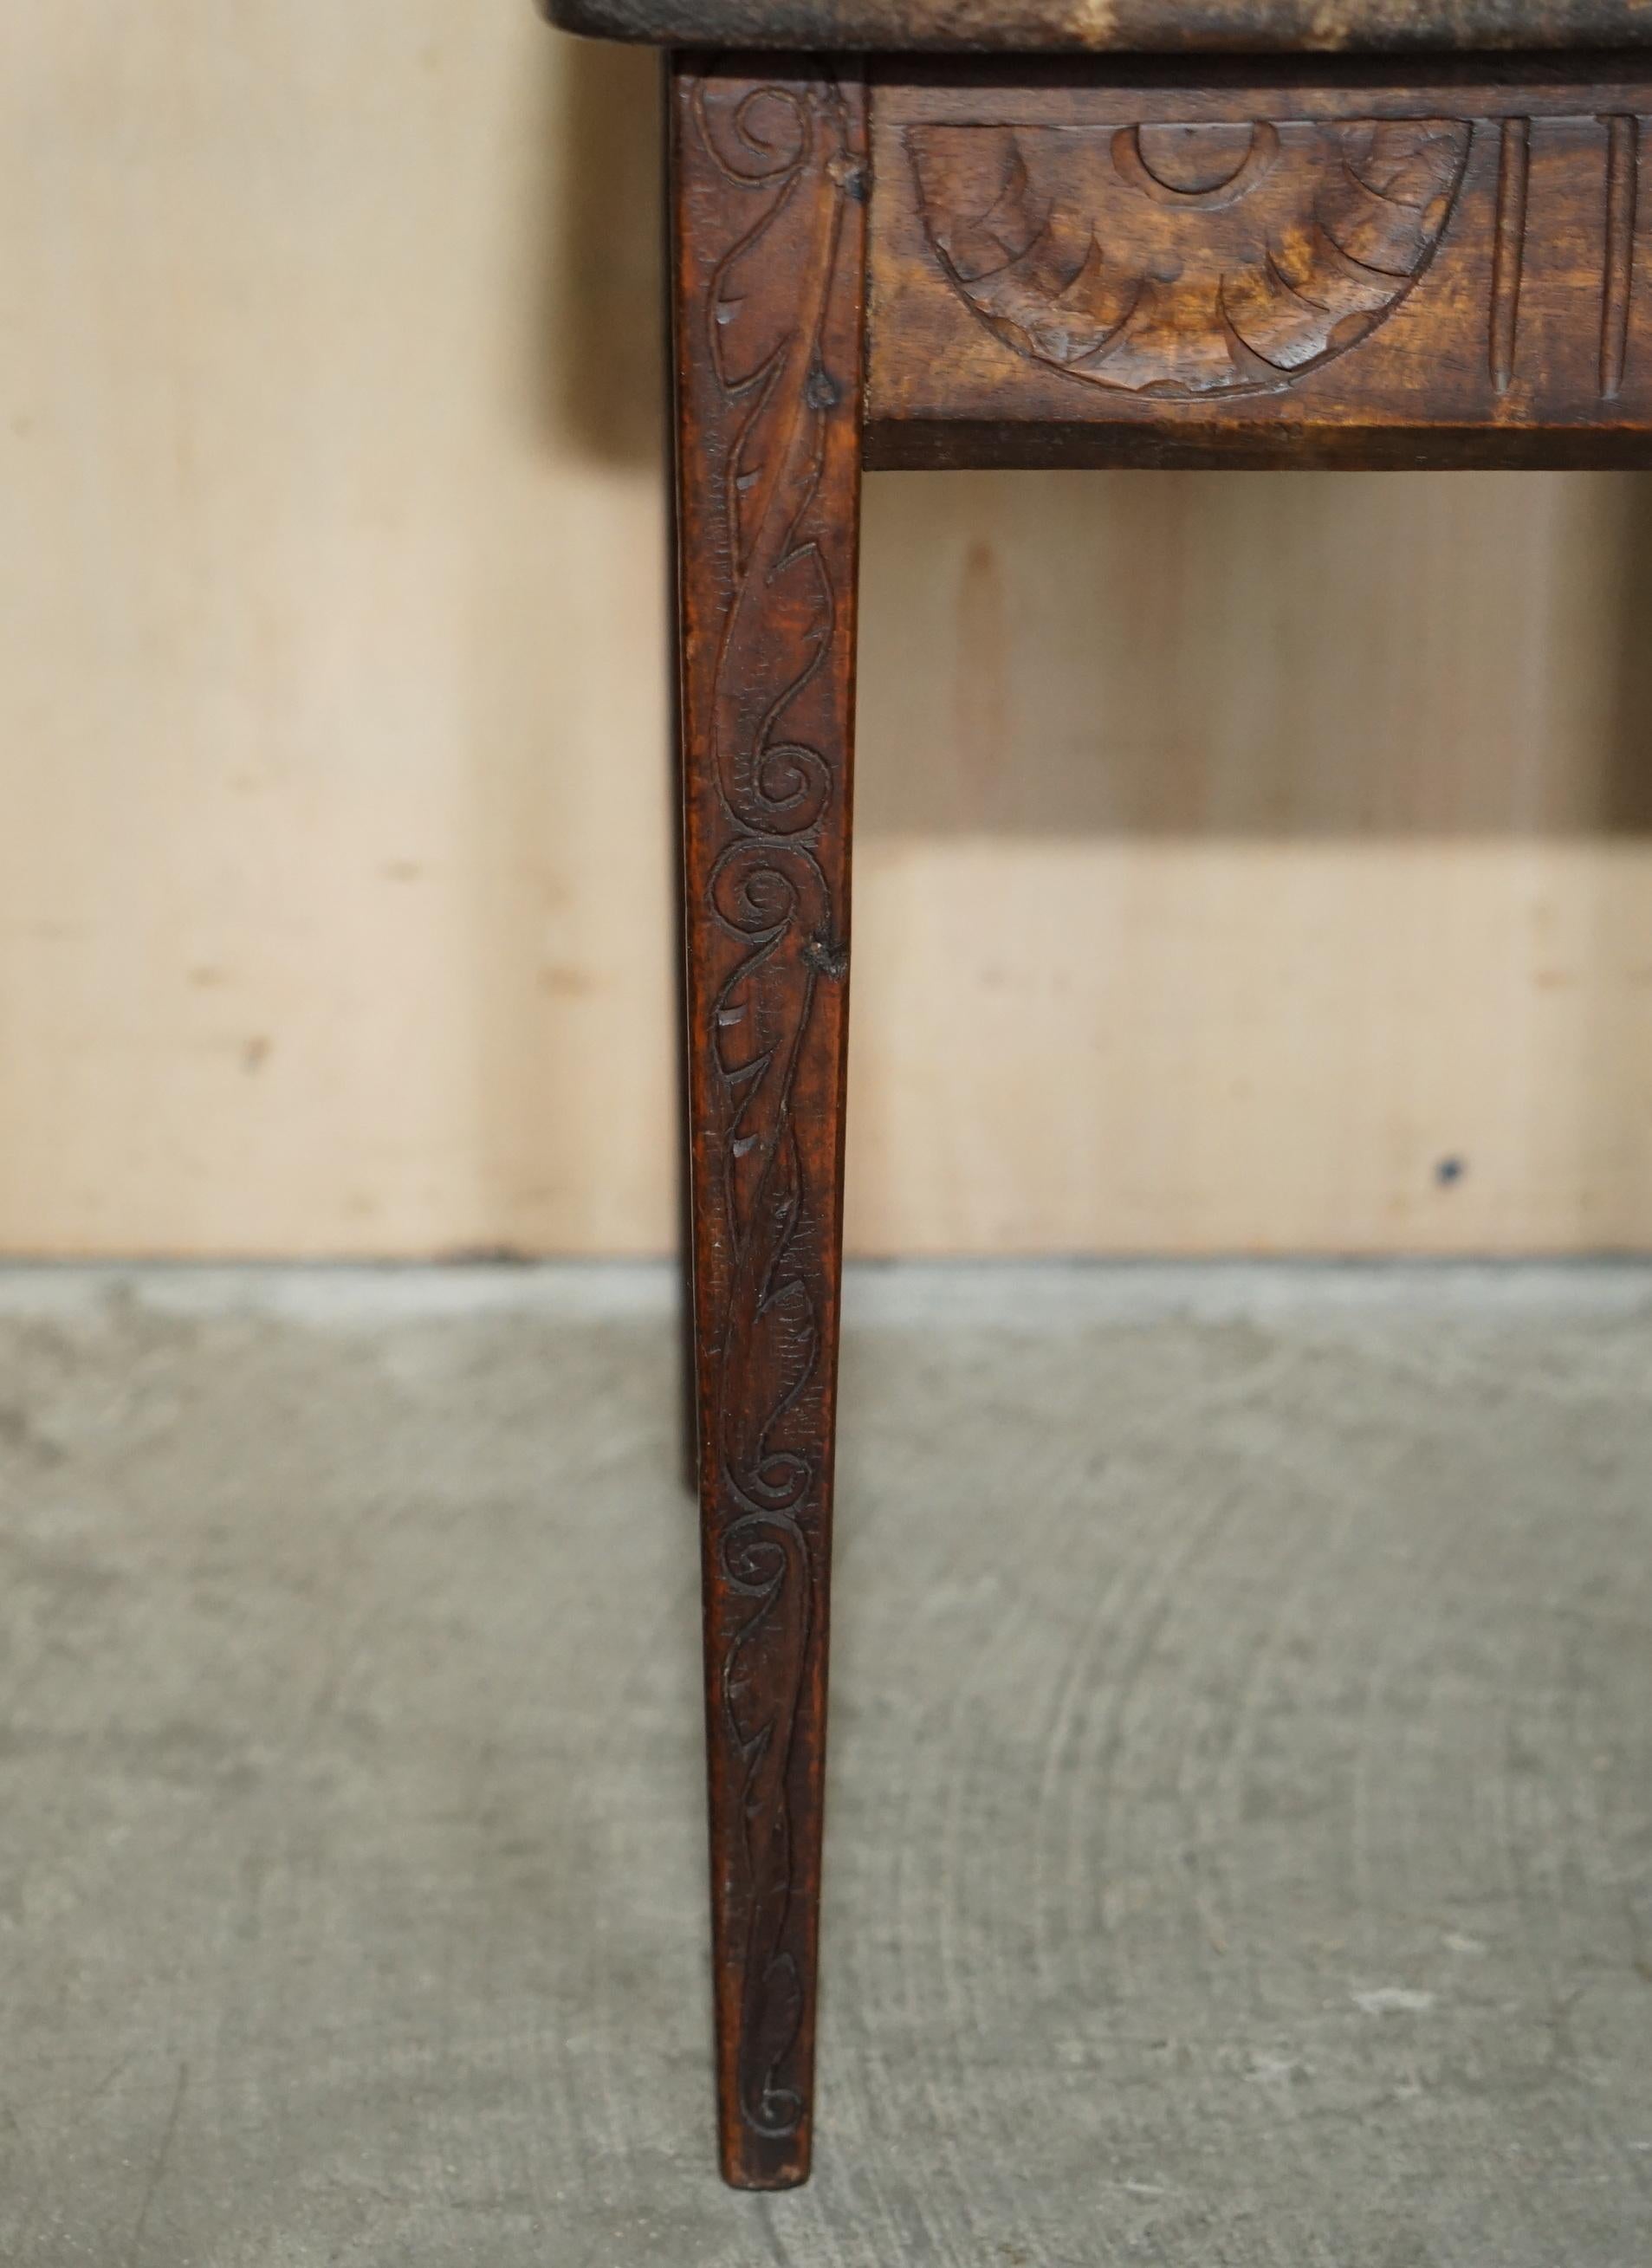 Fait main Table d'appoint sculptée à la main datant de 1914 à 1919 (voir photos) Pièce unique en son genre en vente